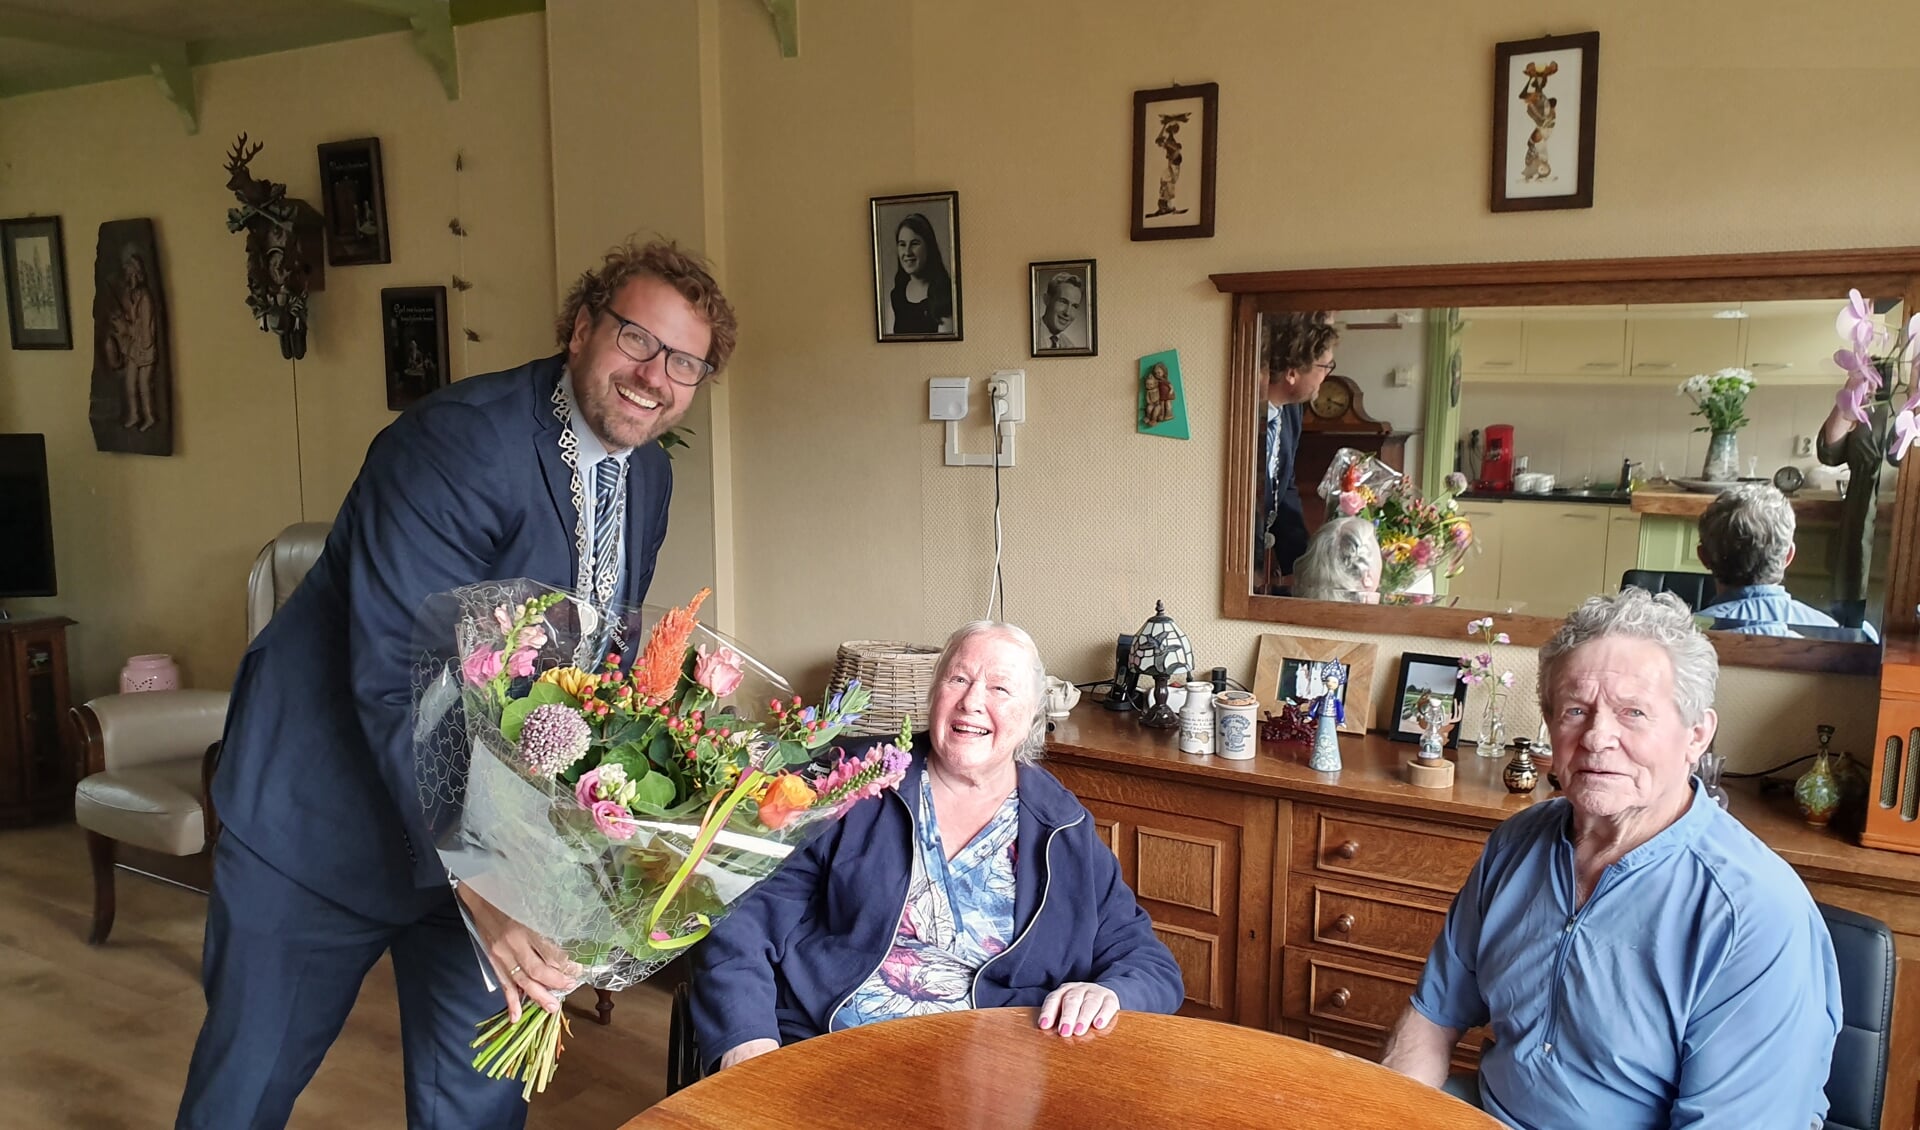 Burgemeester Poorter van Dijk en Waard kwam langs met een mooi boeket bloemen.